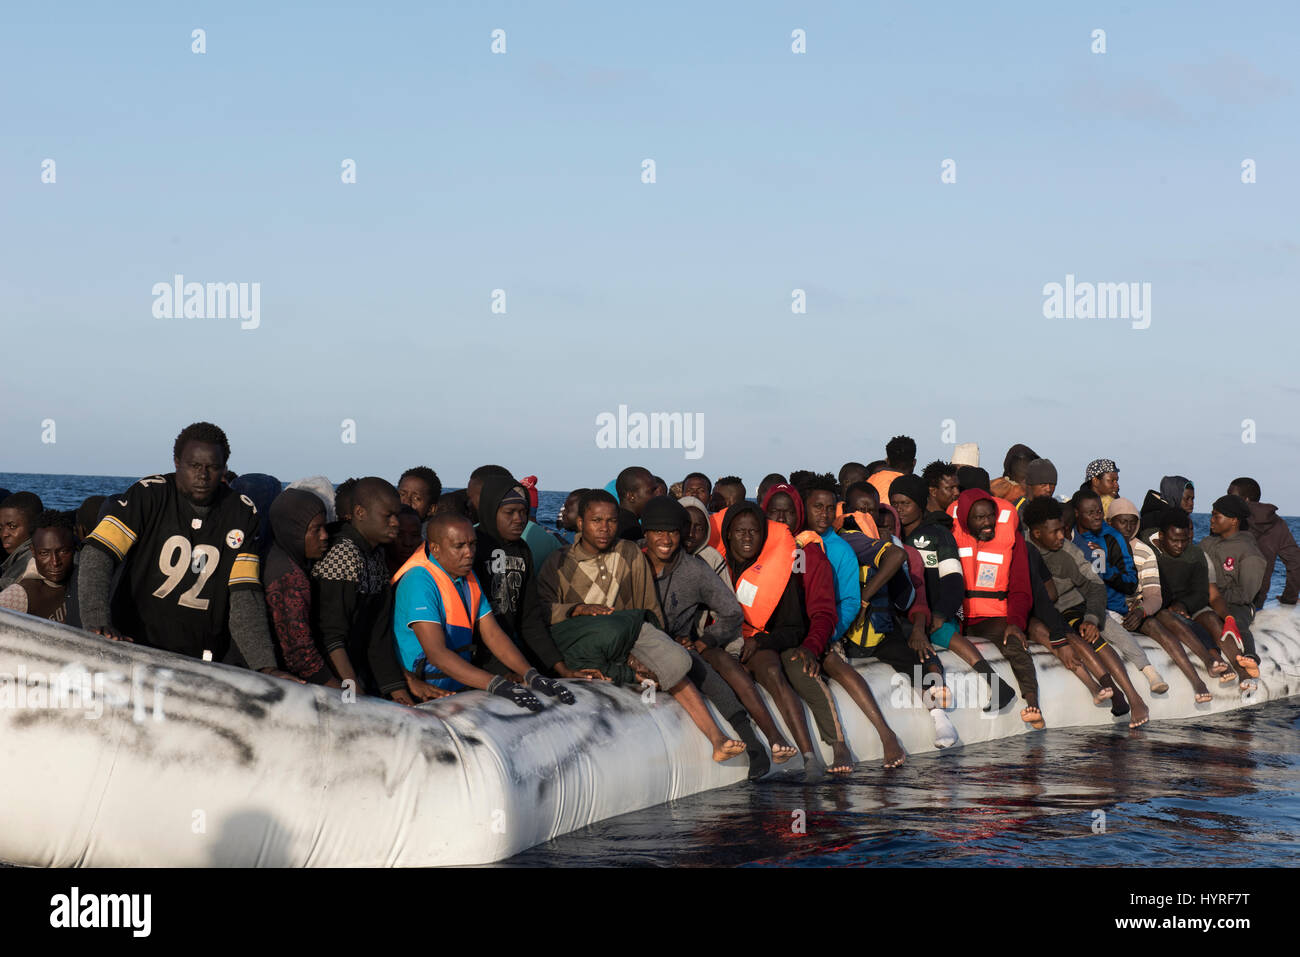 Etwa 150 Flüchtlingen/Migranten aus Afrika sitzen auf einer Rubberboat in schlechtem Zustand und möchten das Mittelmeer nach Europa zu gelangen. Stockfoto